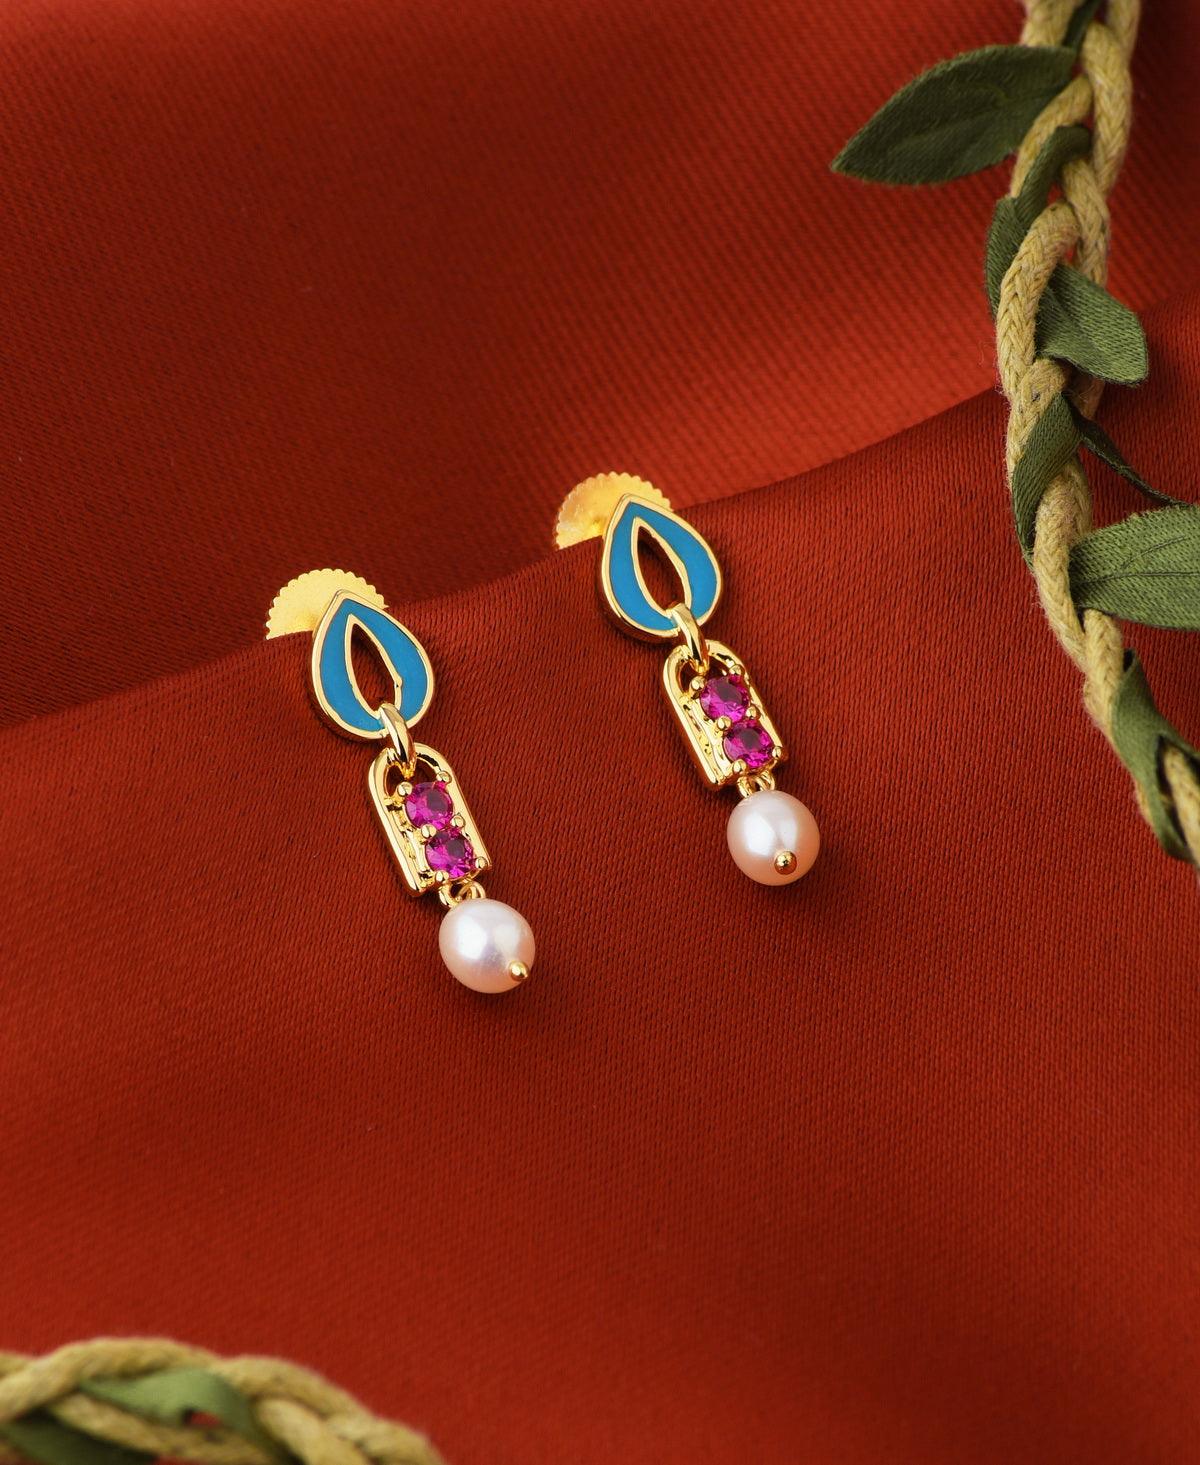 The Trendiest Gold Earrings For You - Blingvine